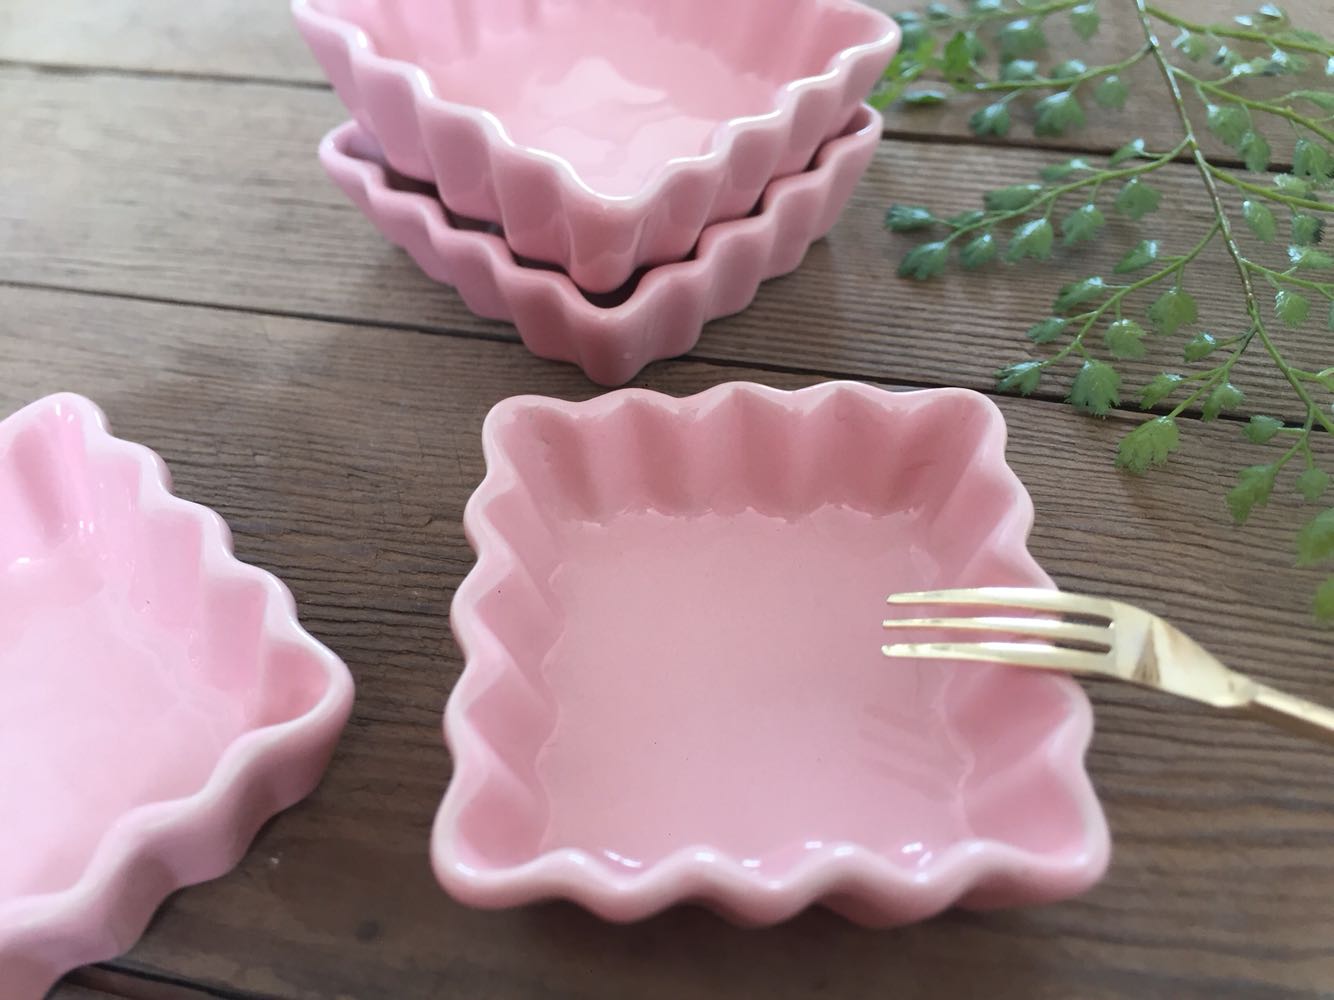 促销日式酱油碟调味碟小菜咸菜碟粉色花边方形蘸料碟家用陶瓷小碟